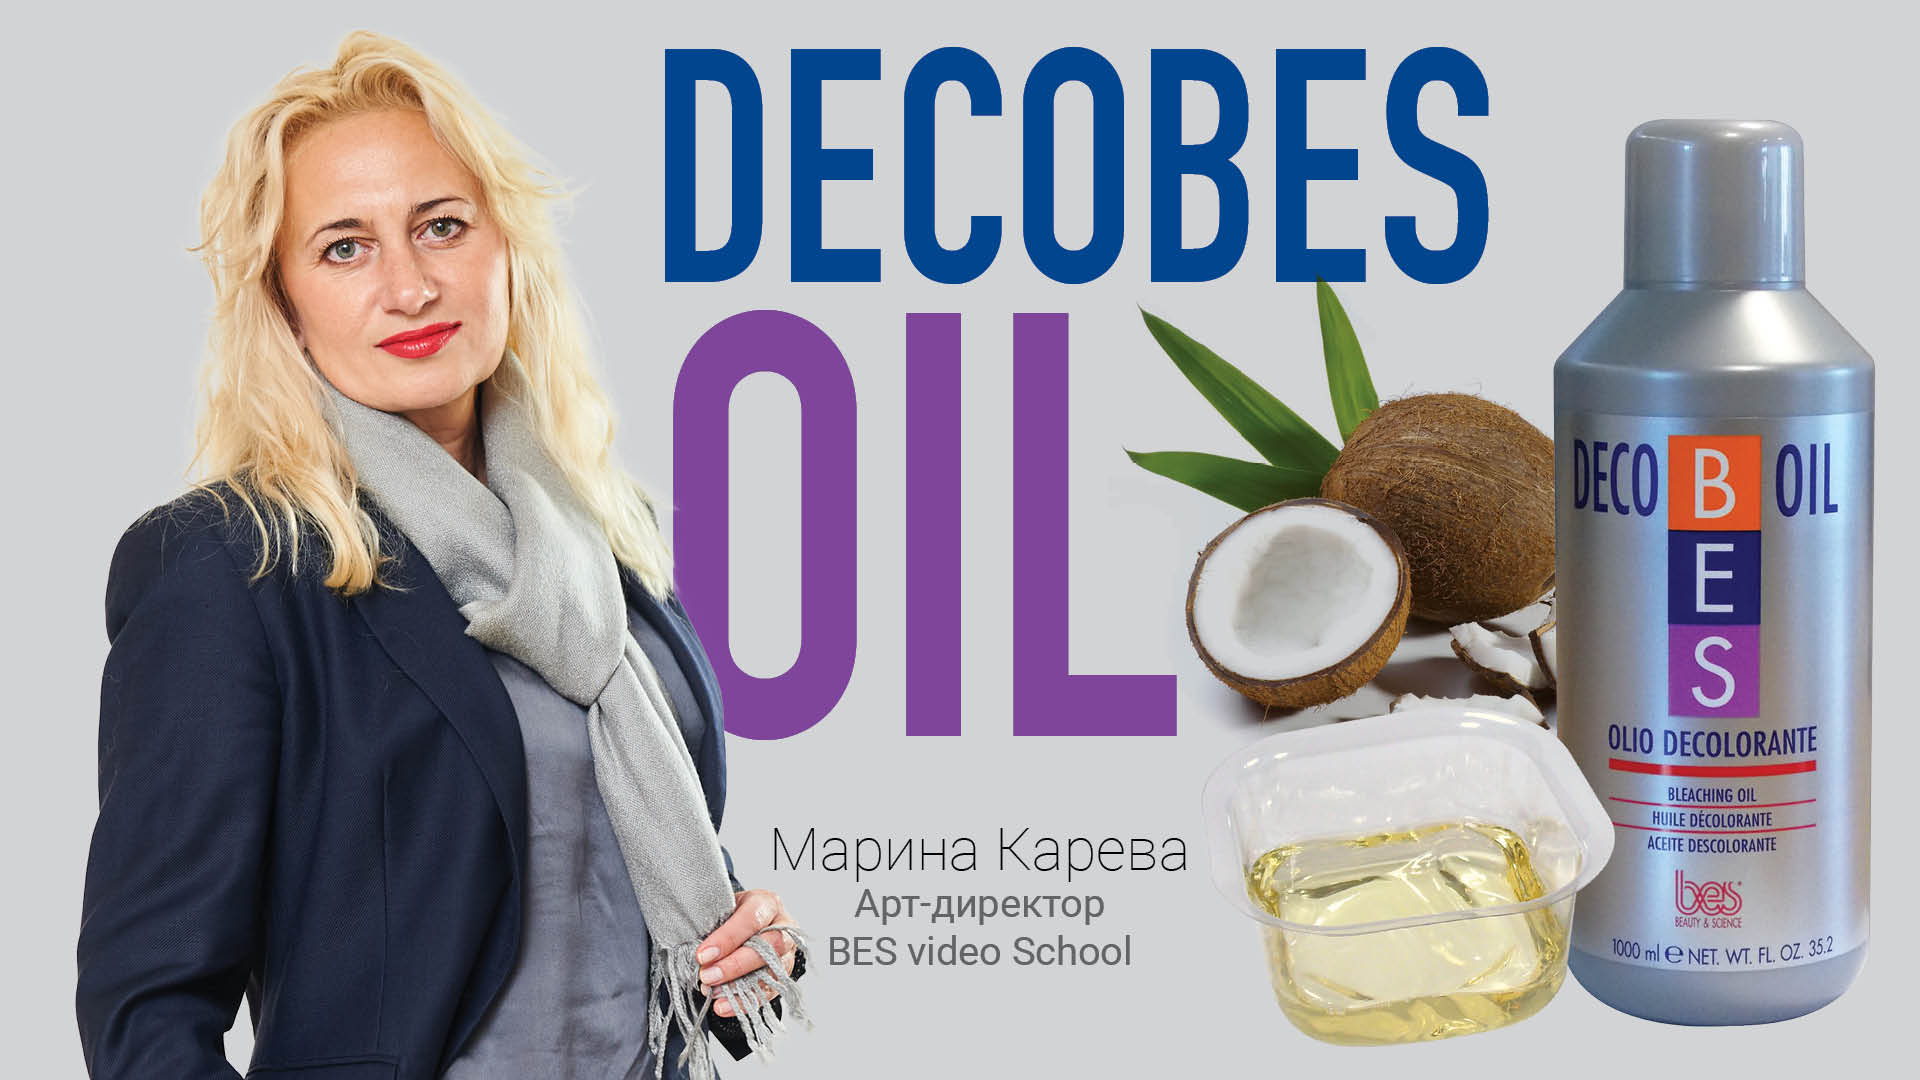 3 способа применения обесцвечивающего масла Decobes Oil